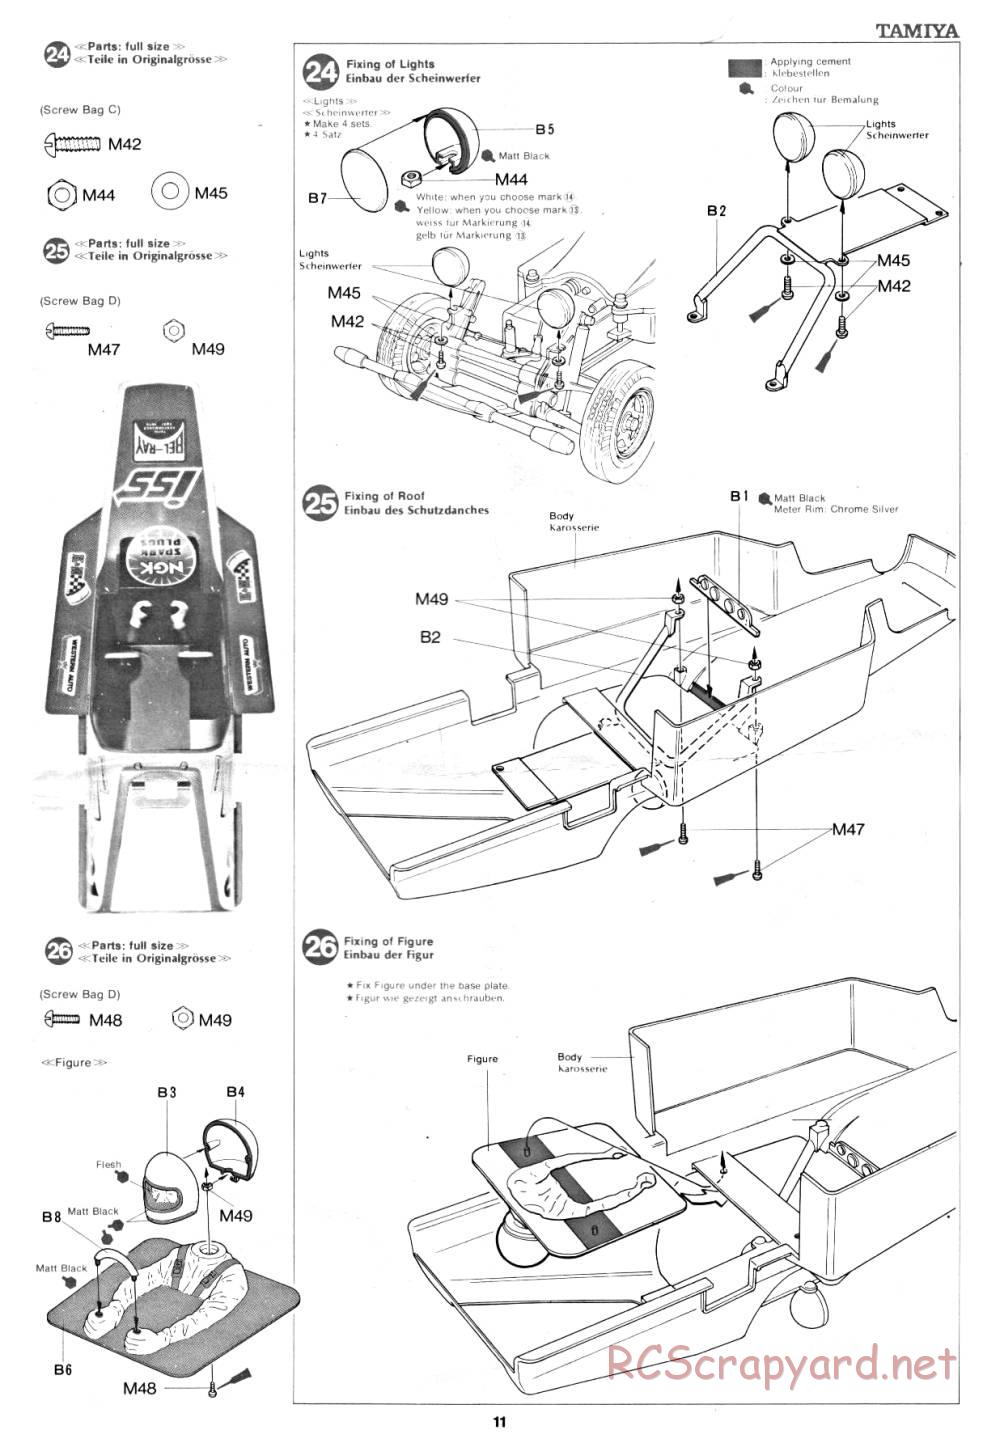 Tamiya - Rough Rider - 58015 - Manual - Page 11